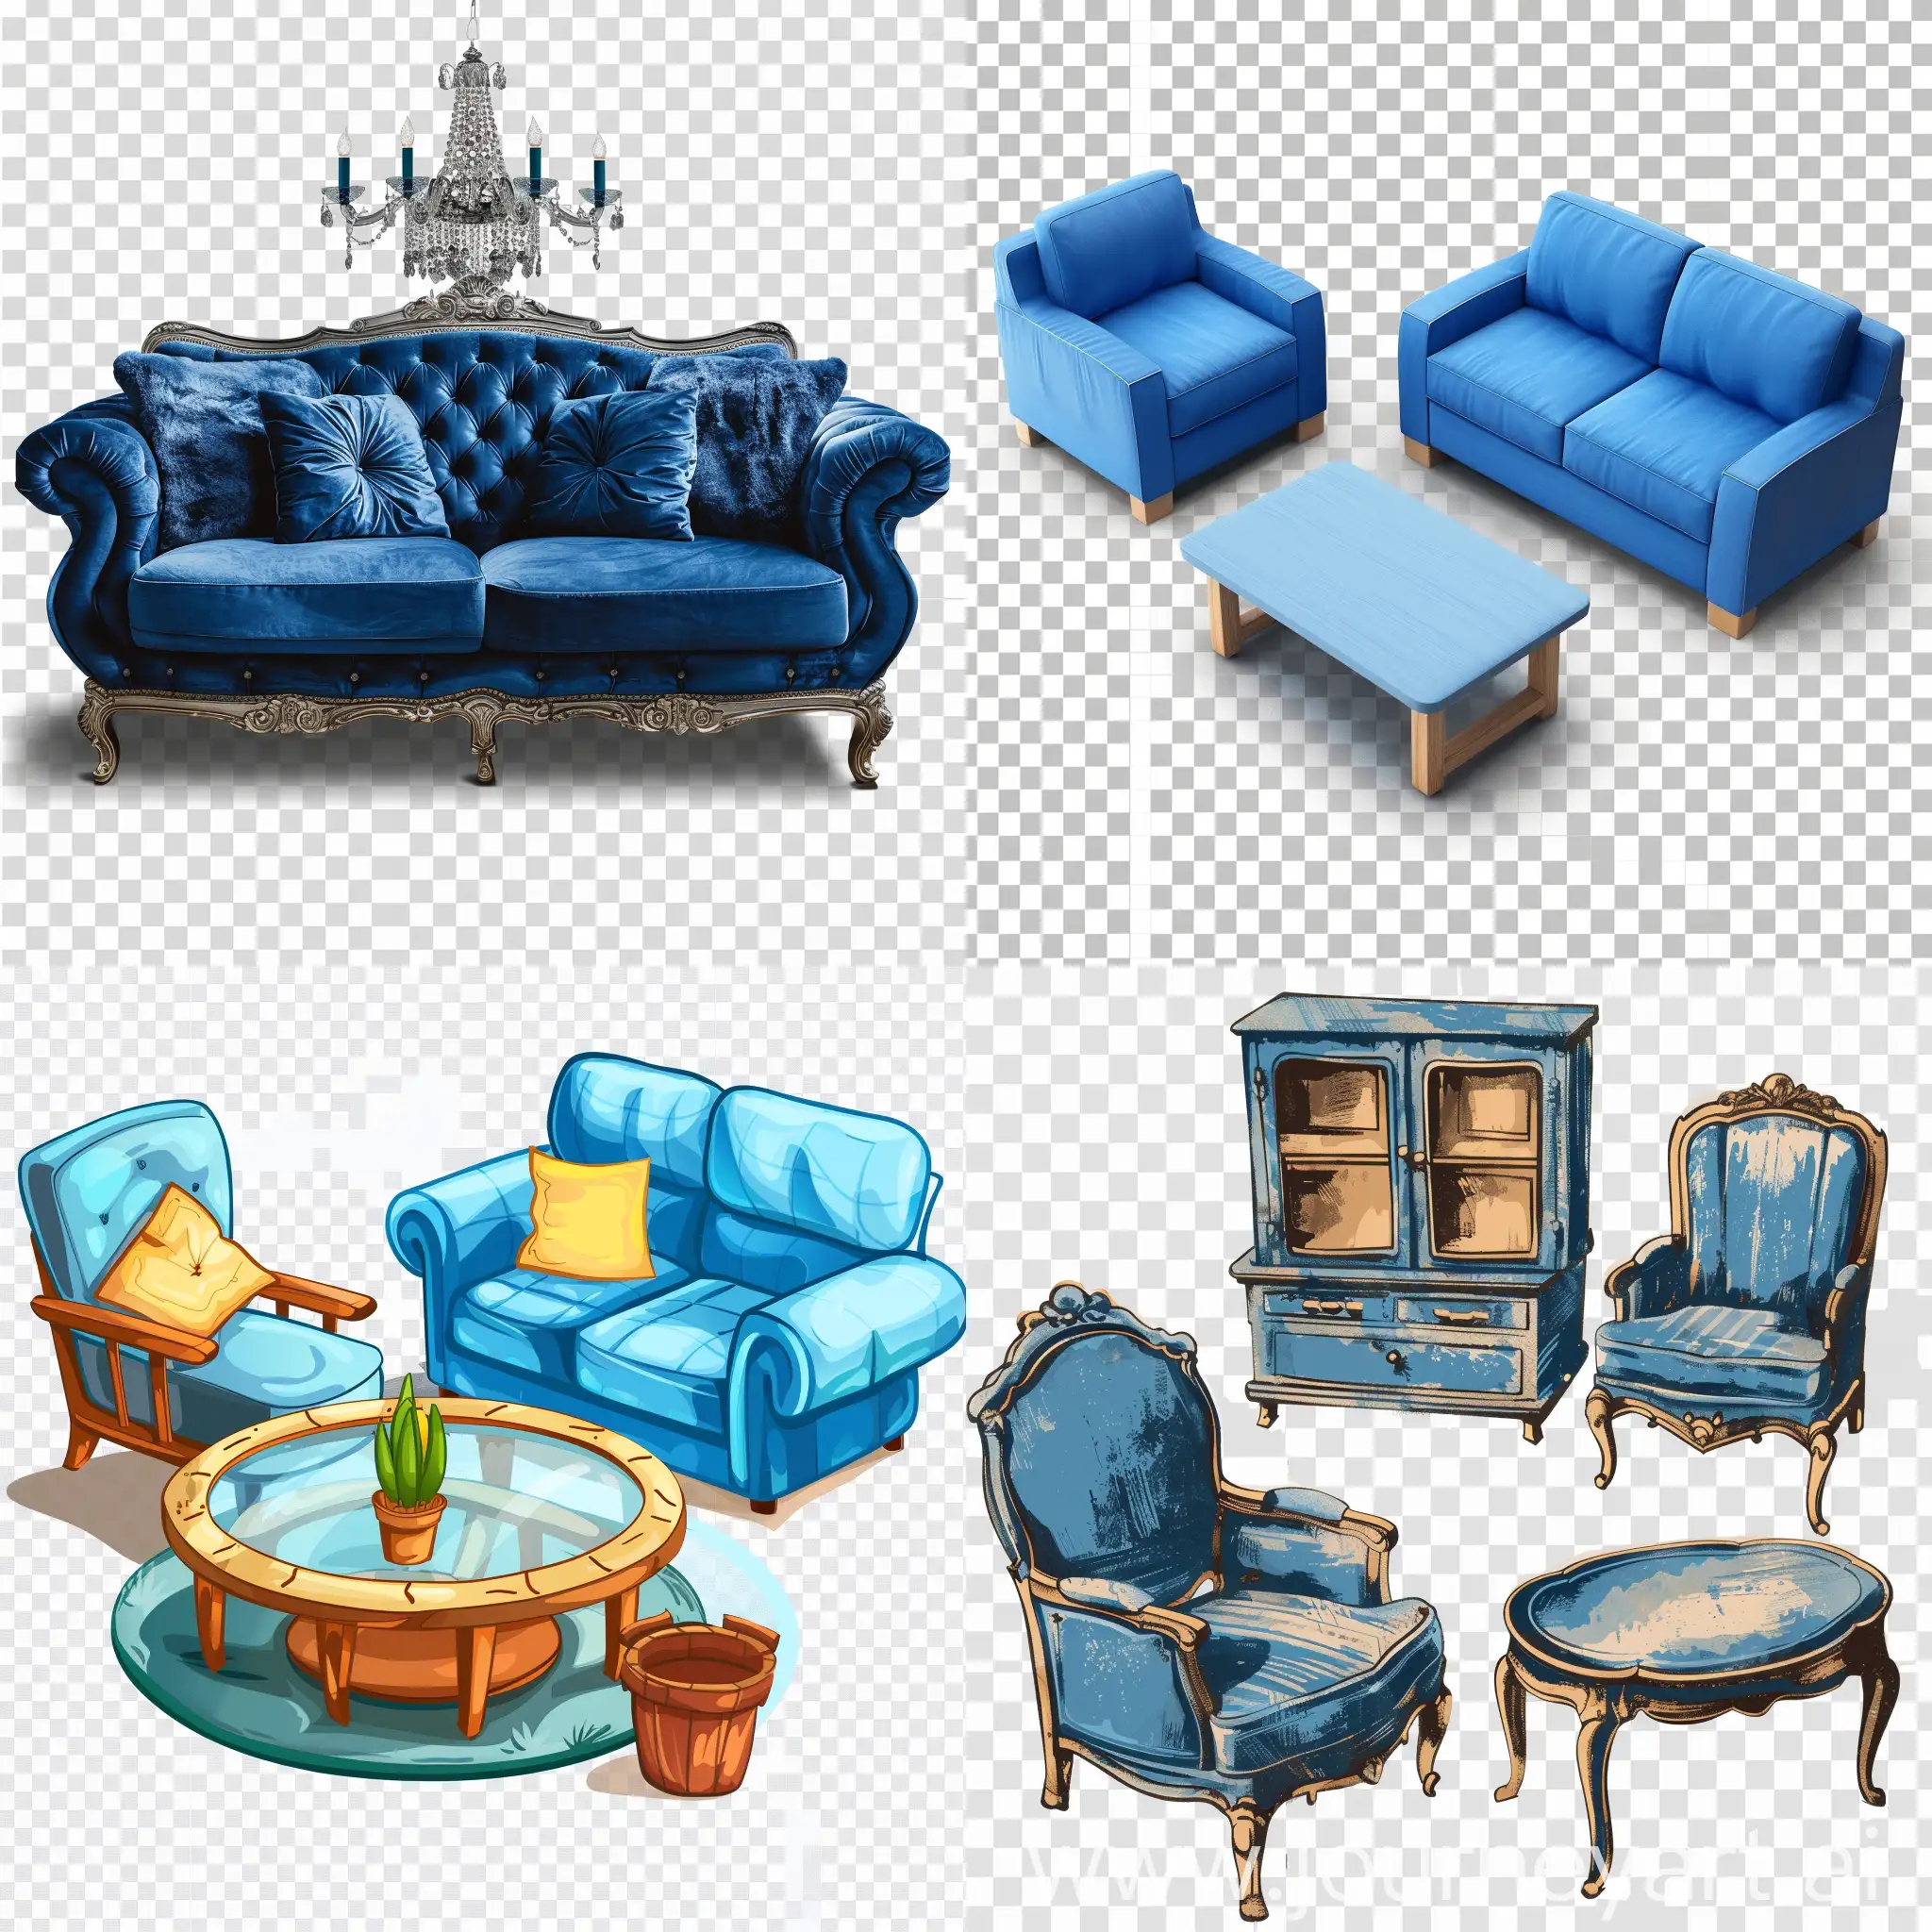 Modern-Blue-Furniture-Design-on-Transparent-Background